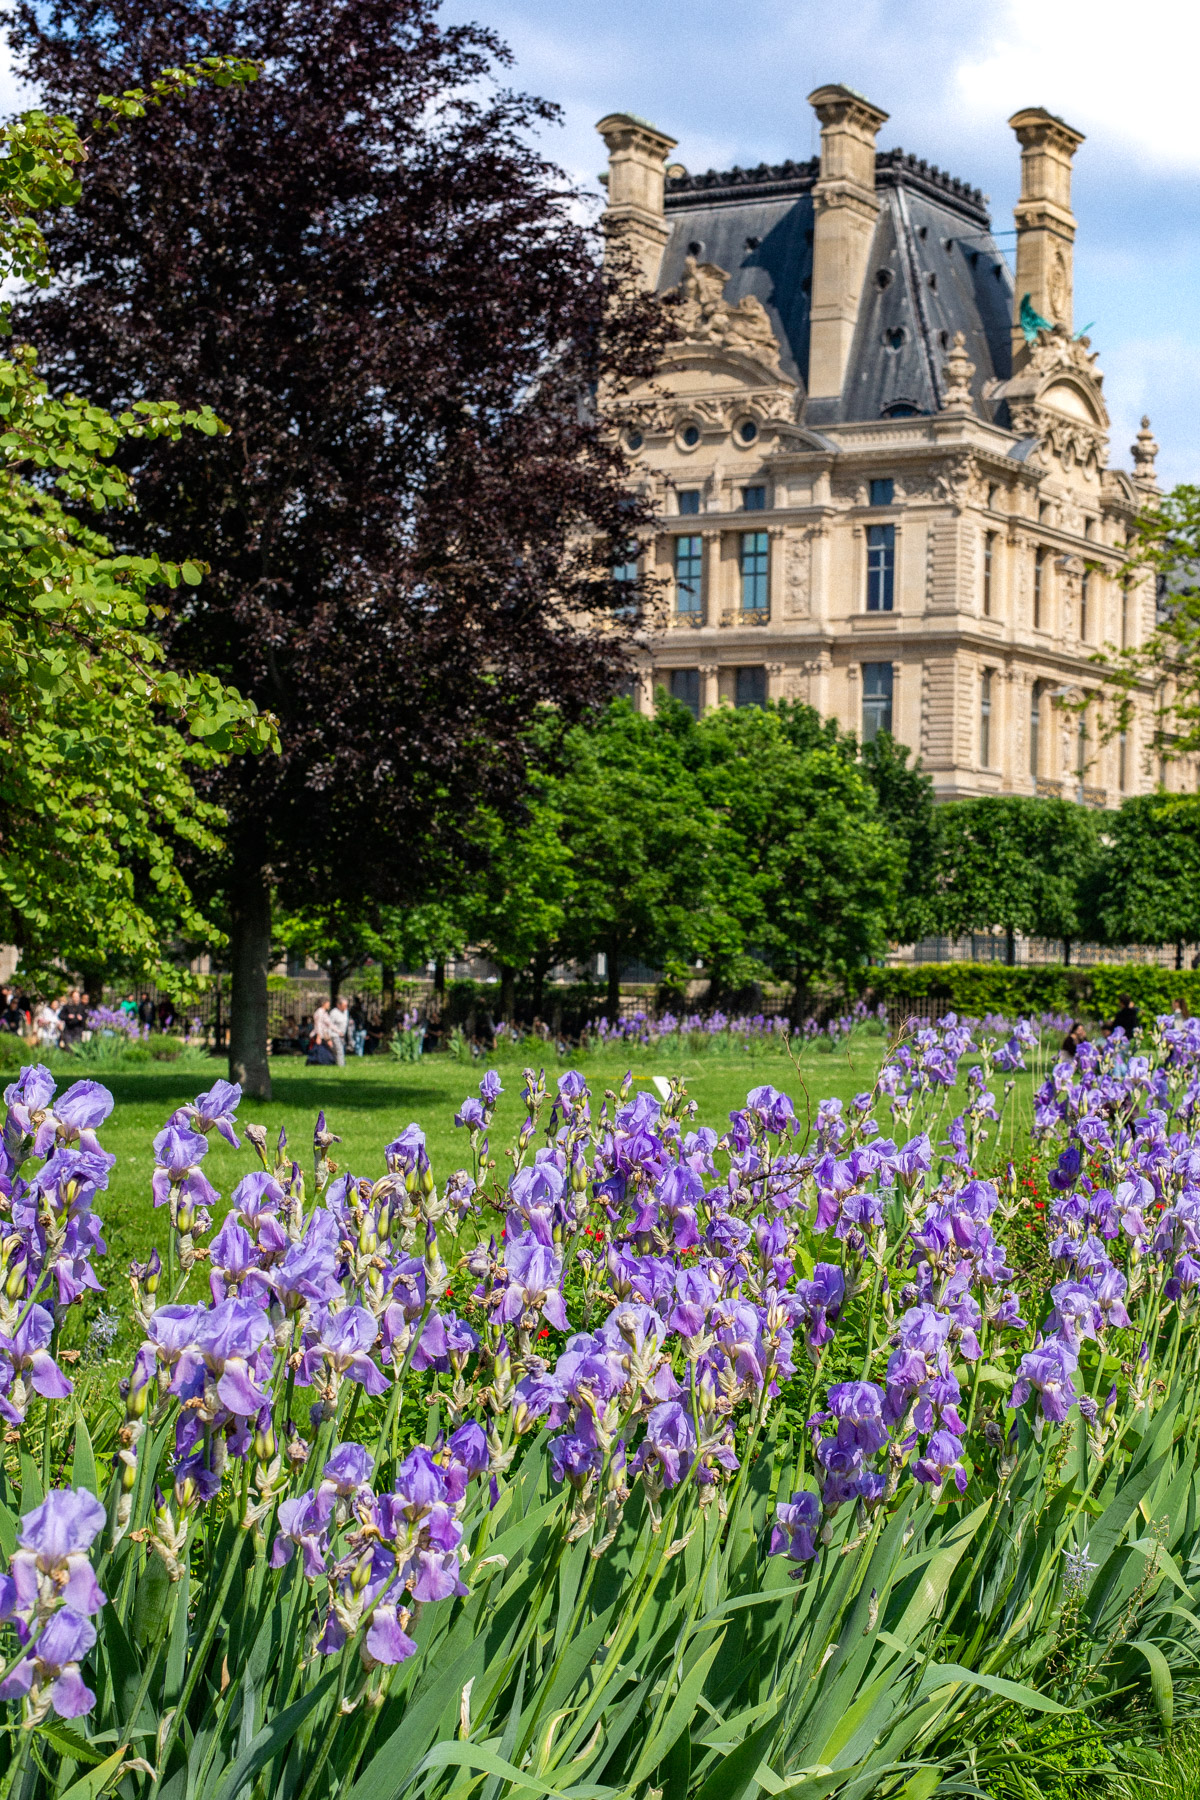 Tuileries Garden
Things to do Paris Spring